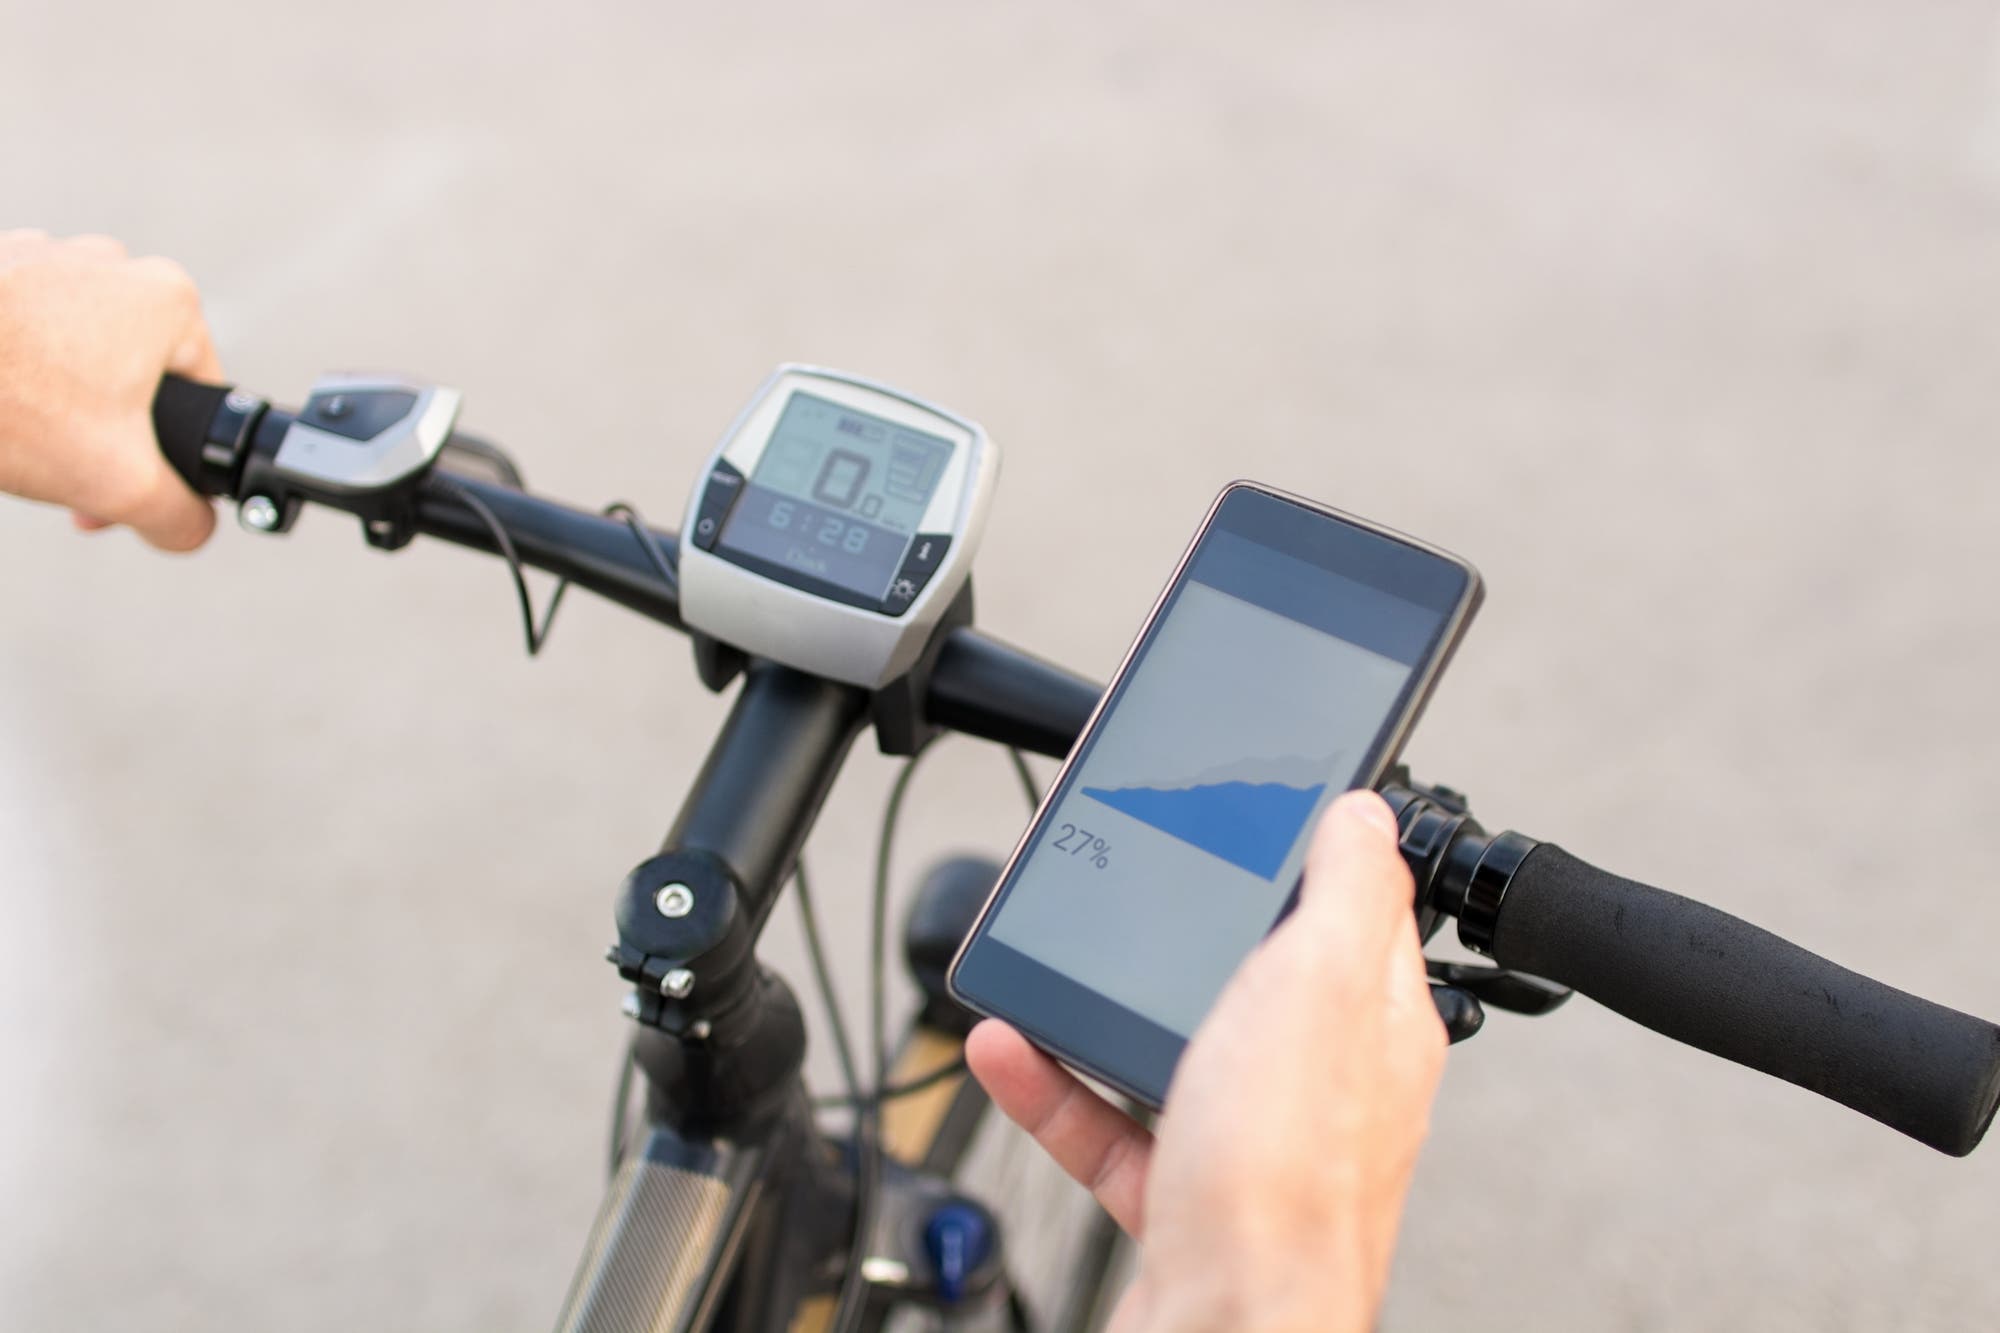 Вы использовали приложение, чтобы зарегистрировать свои велосипедные процедуры и оказались подозреваемым в ограблении